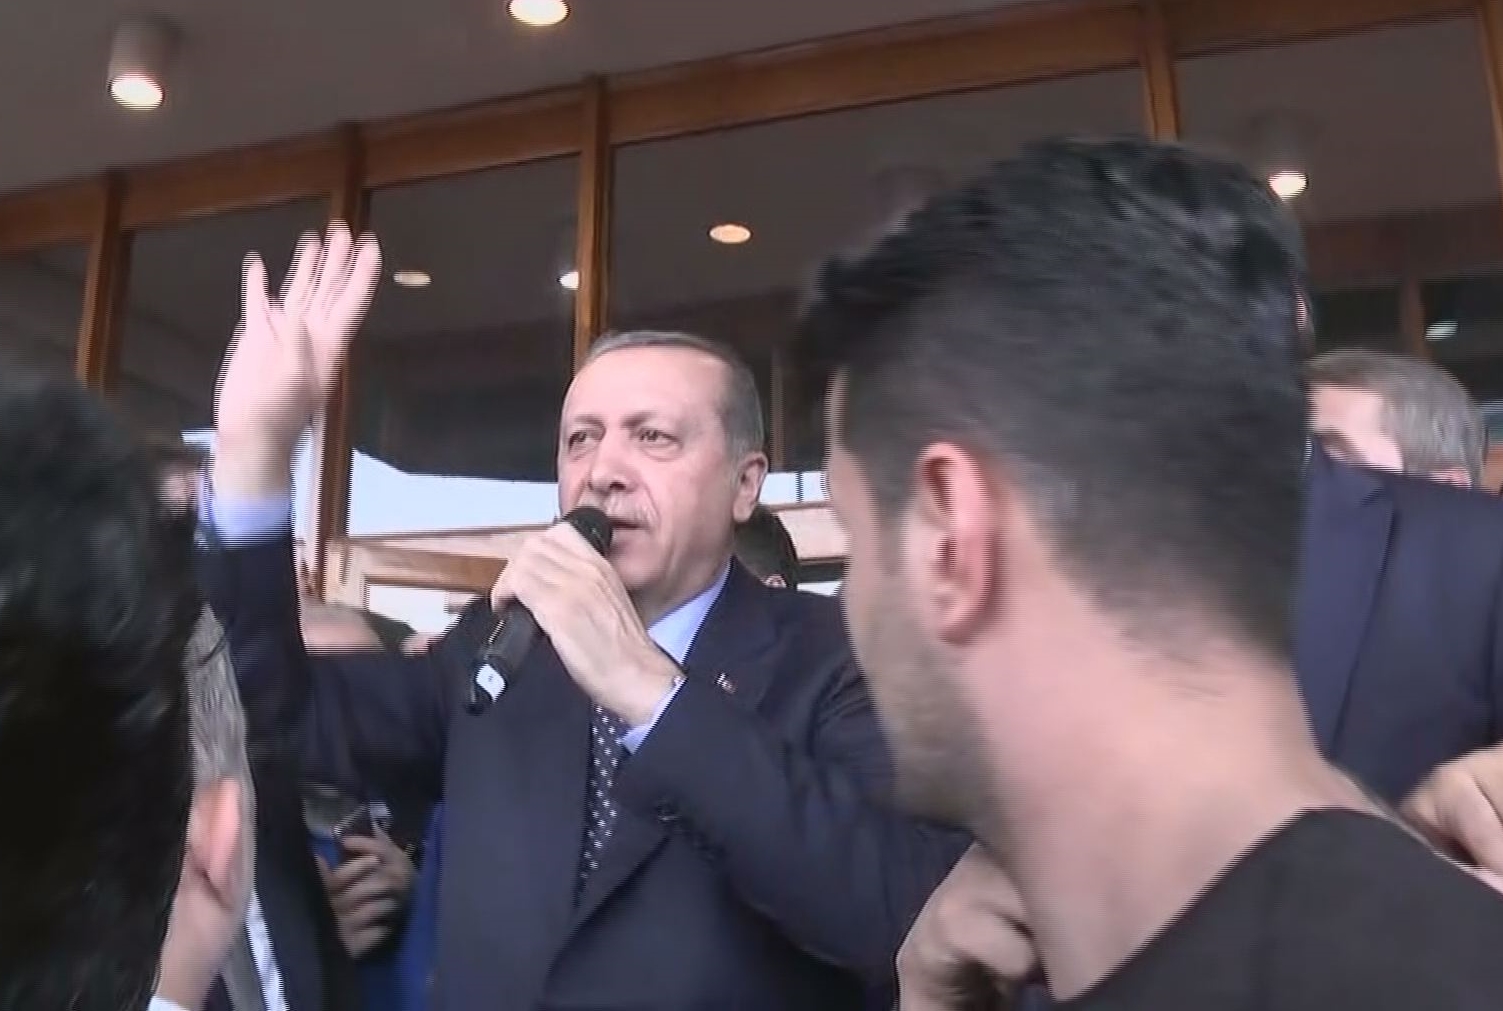 Havalimanı’nda toplanan kalabalığa hitap eden Erdoğan, darbecileri alçak olarak tanımladı.